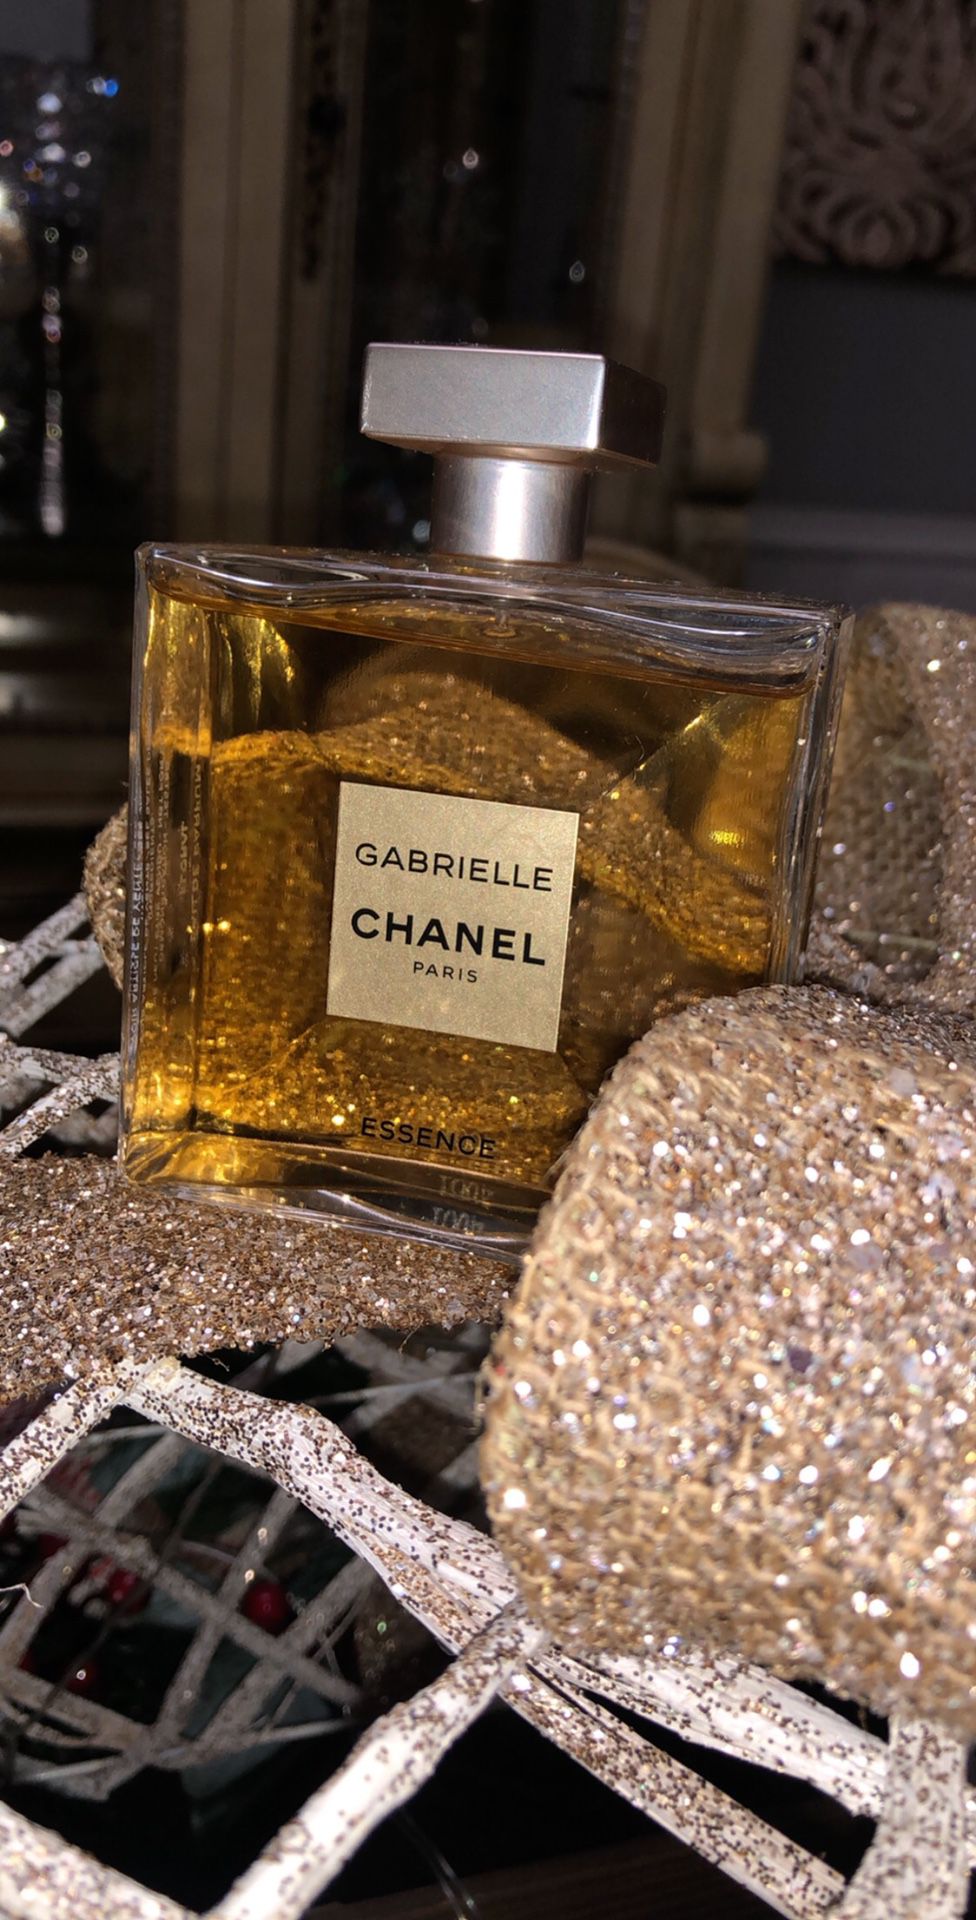 100% Authentic Chanel Perfume